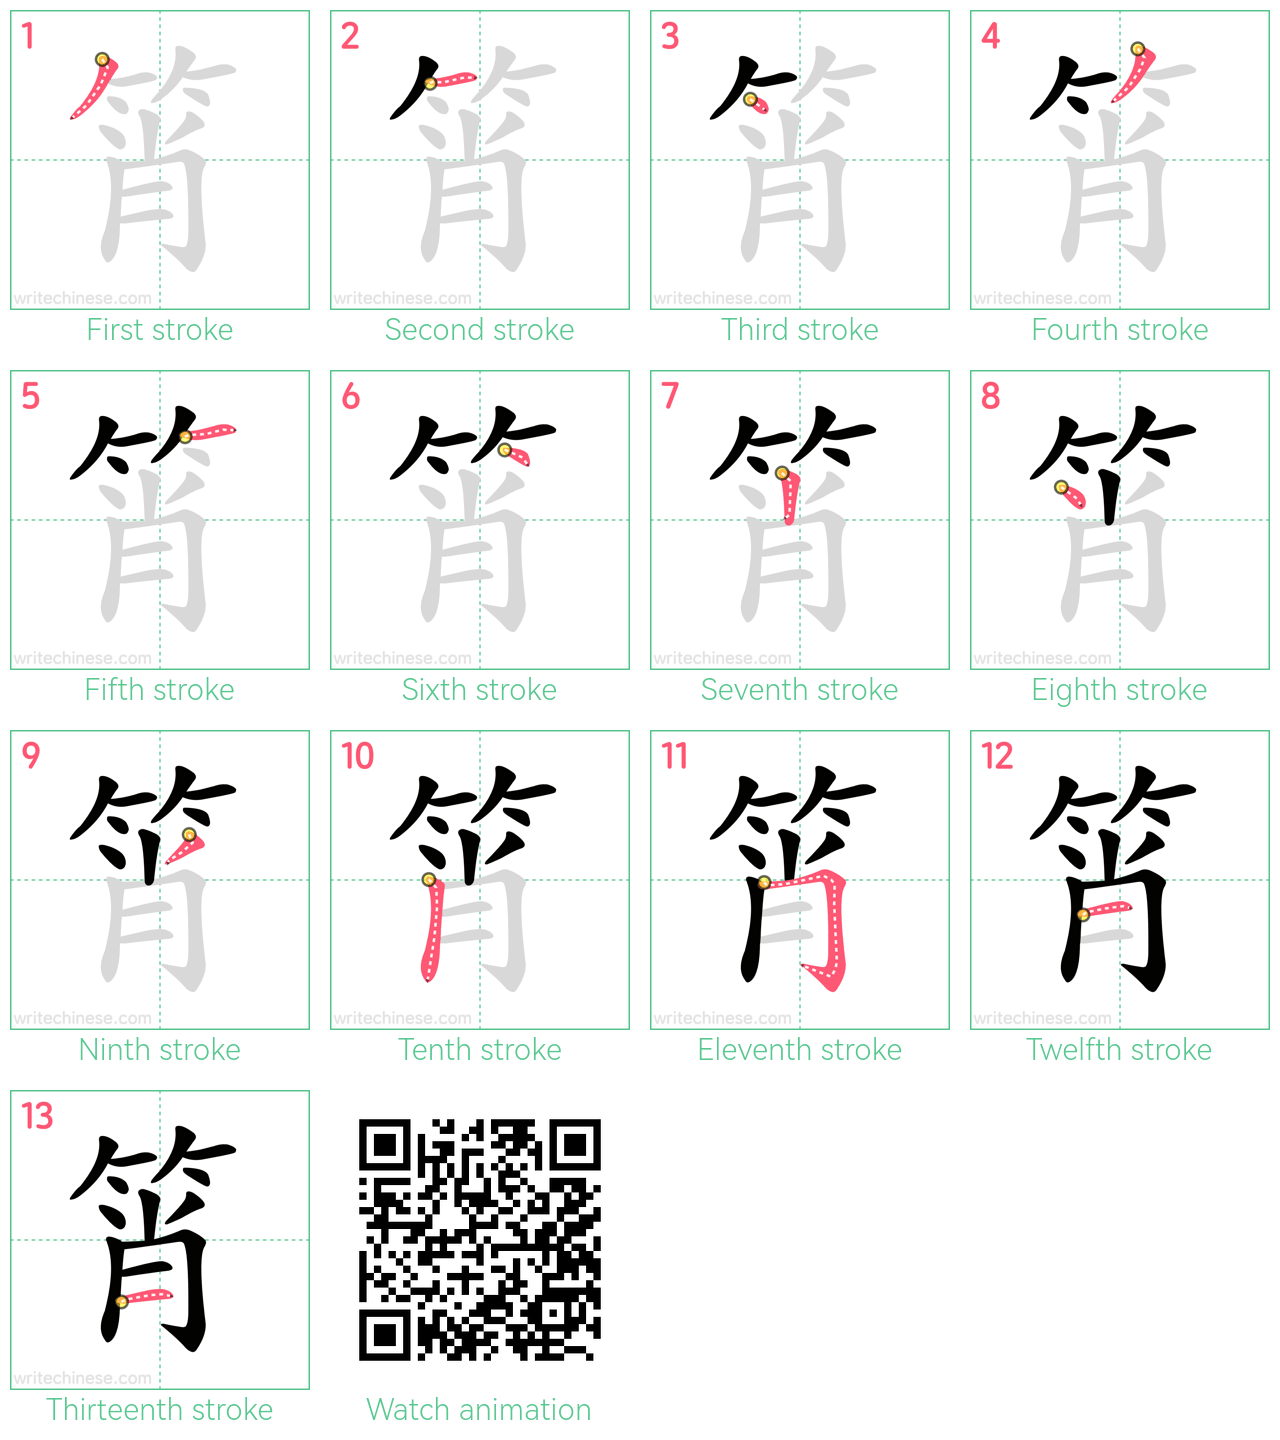 筲 step-by-step stroke order diagrams